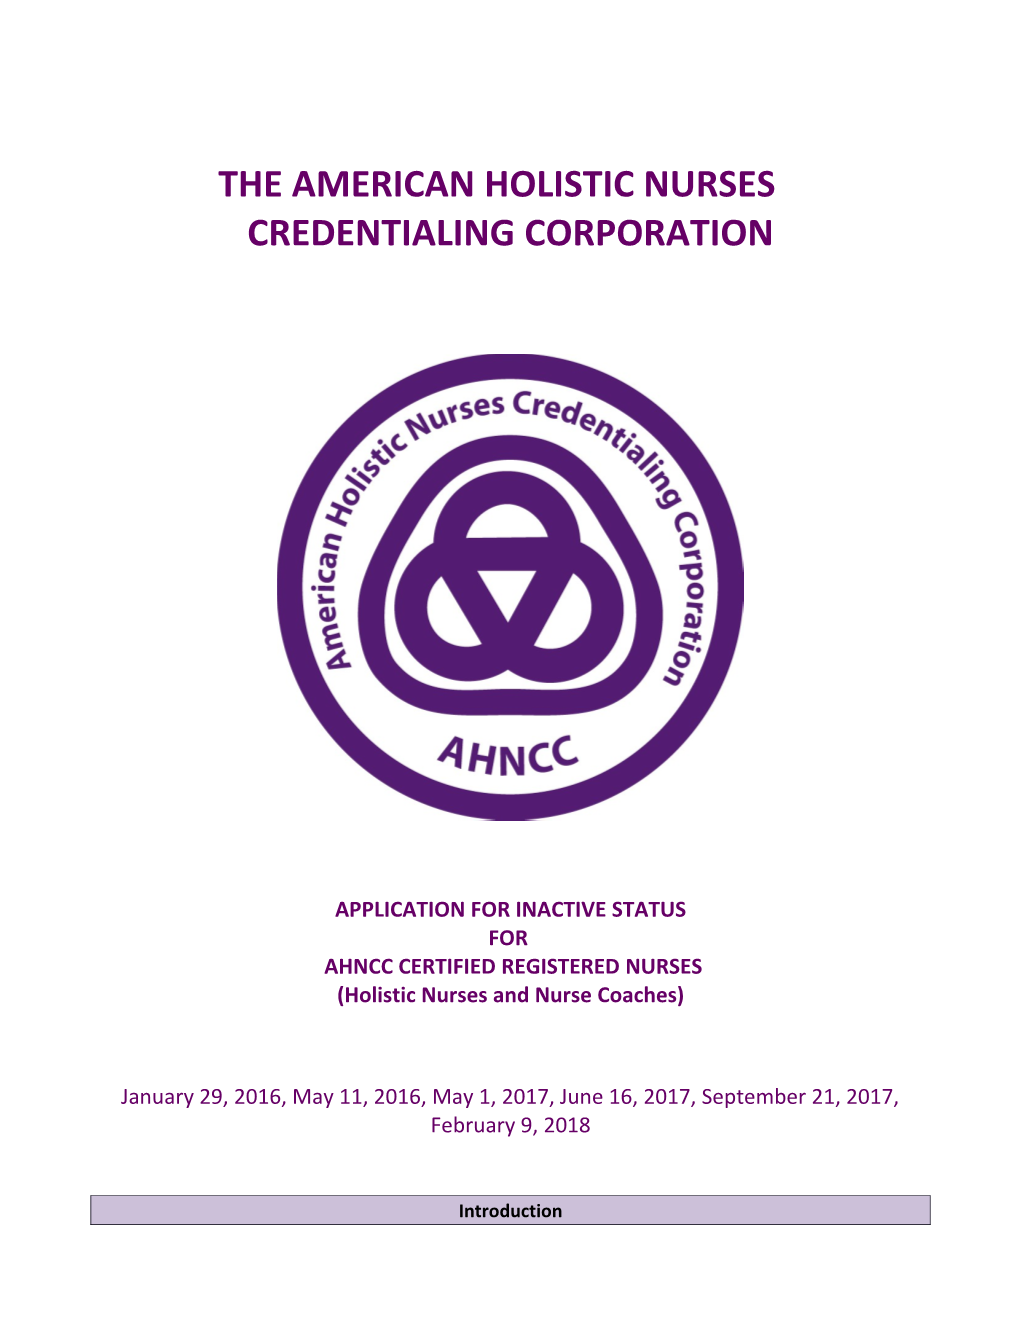 AHNCC Inactive Status Handbook Application Packet